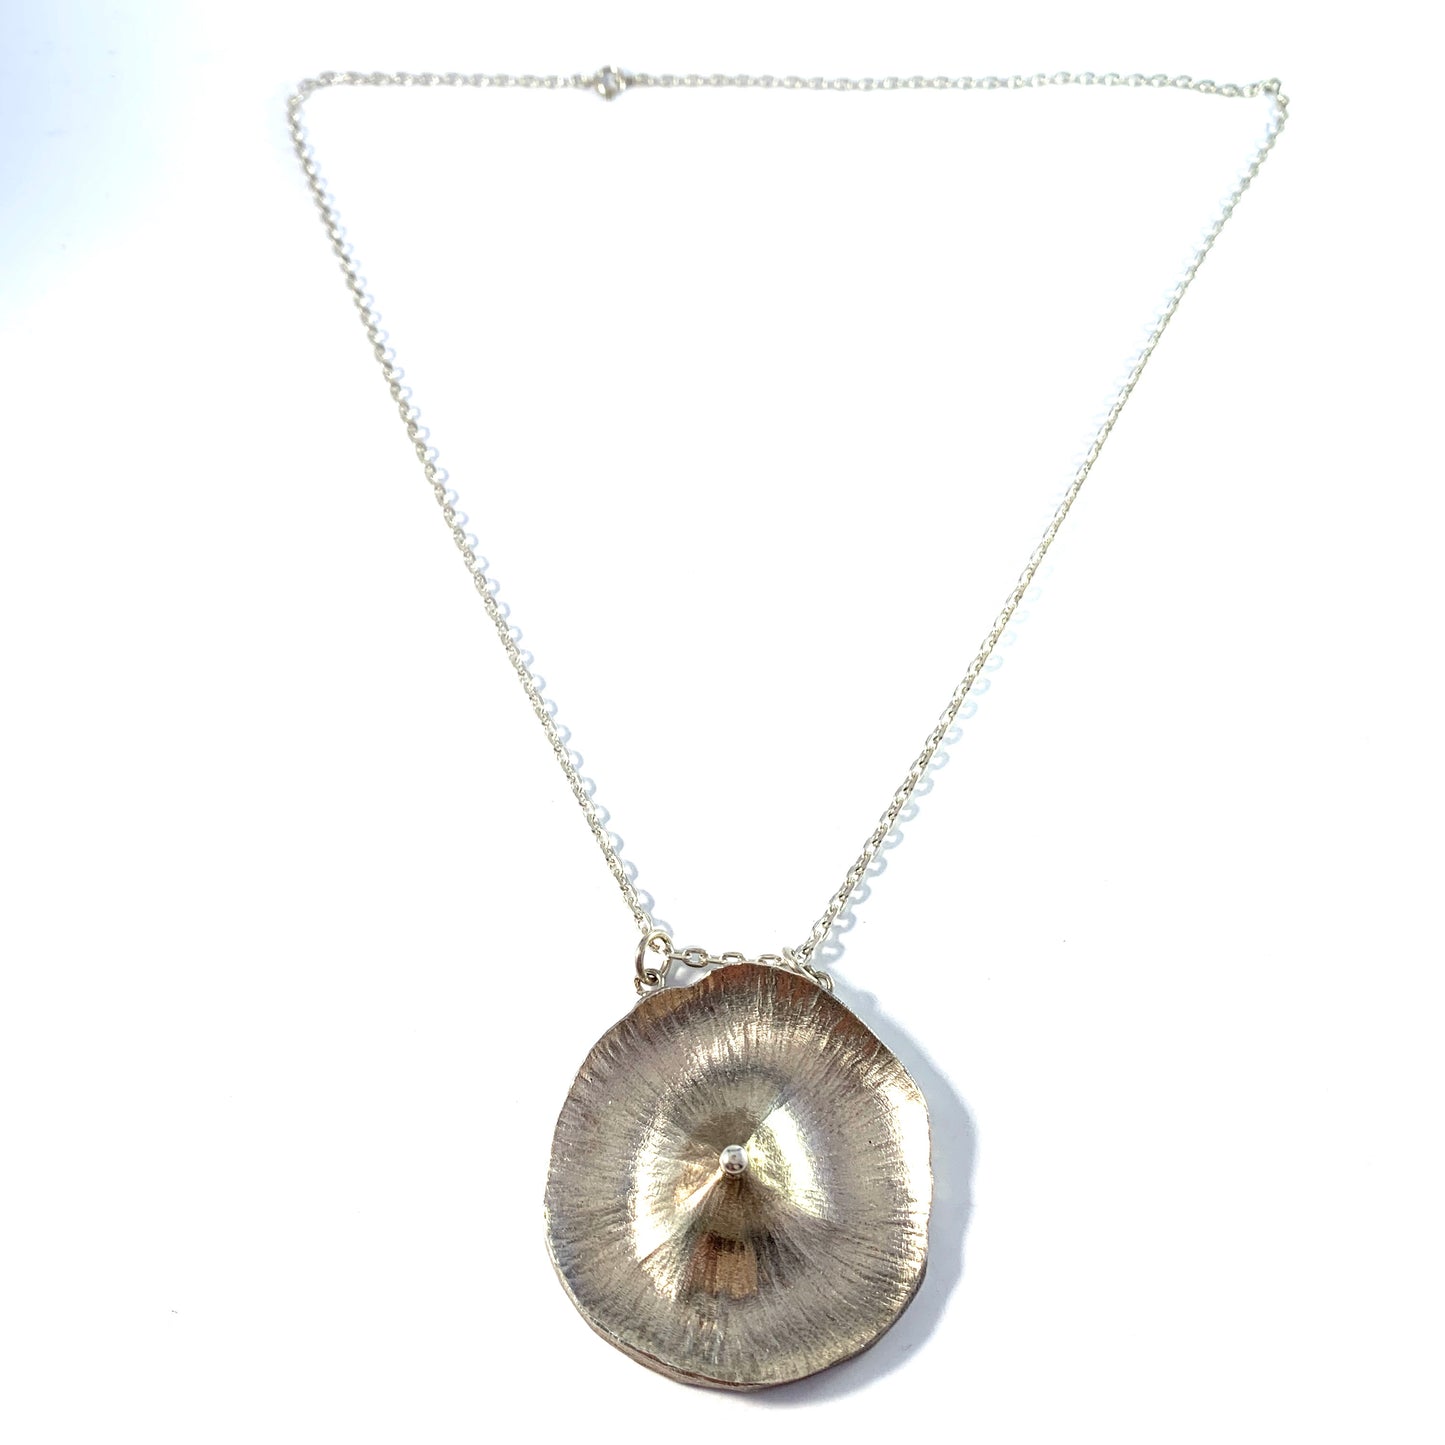 Ragnar Skalstad, Norway 1960s Sterling Silver Pendant Necklace. Design 301